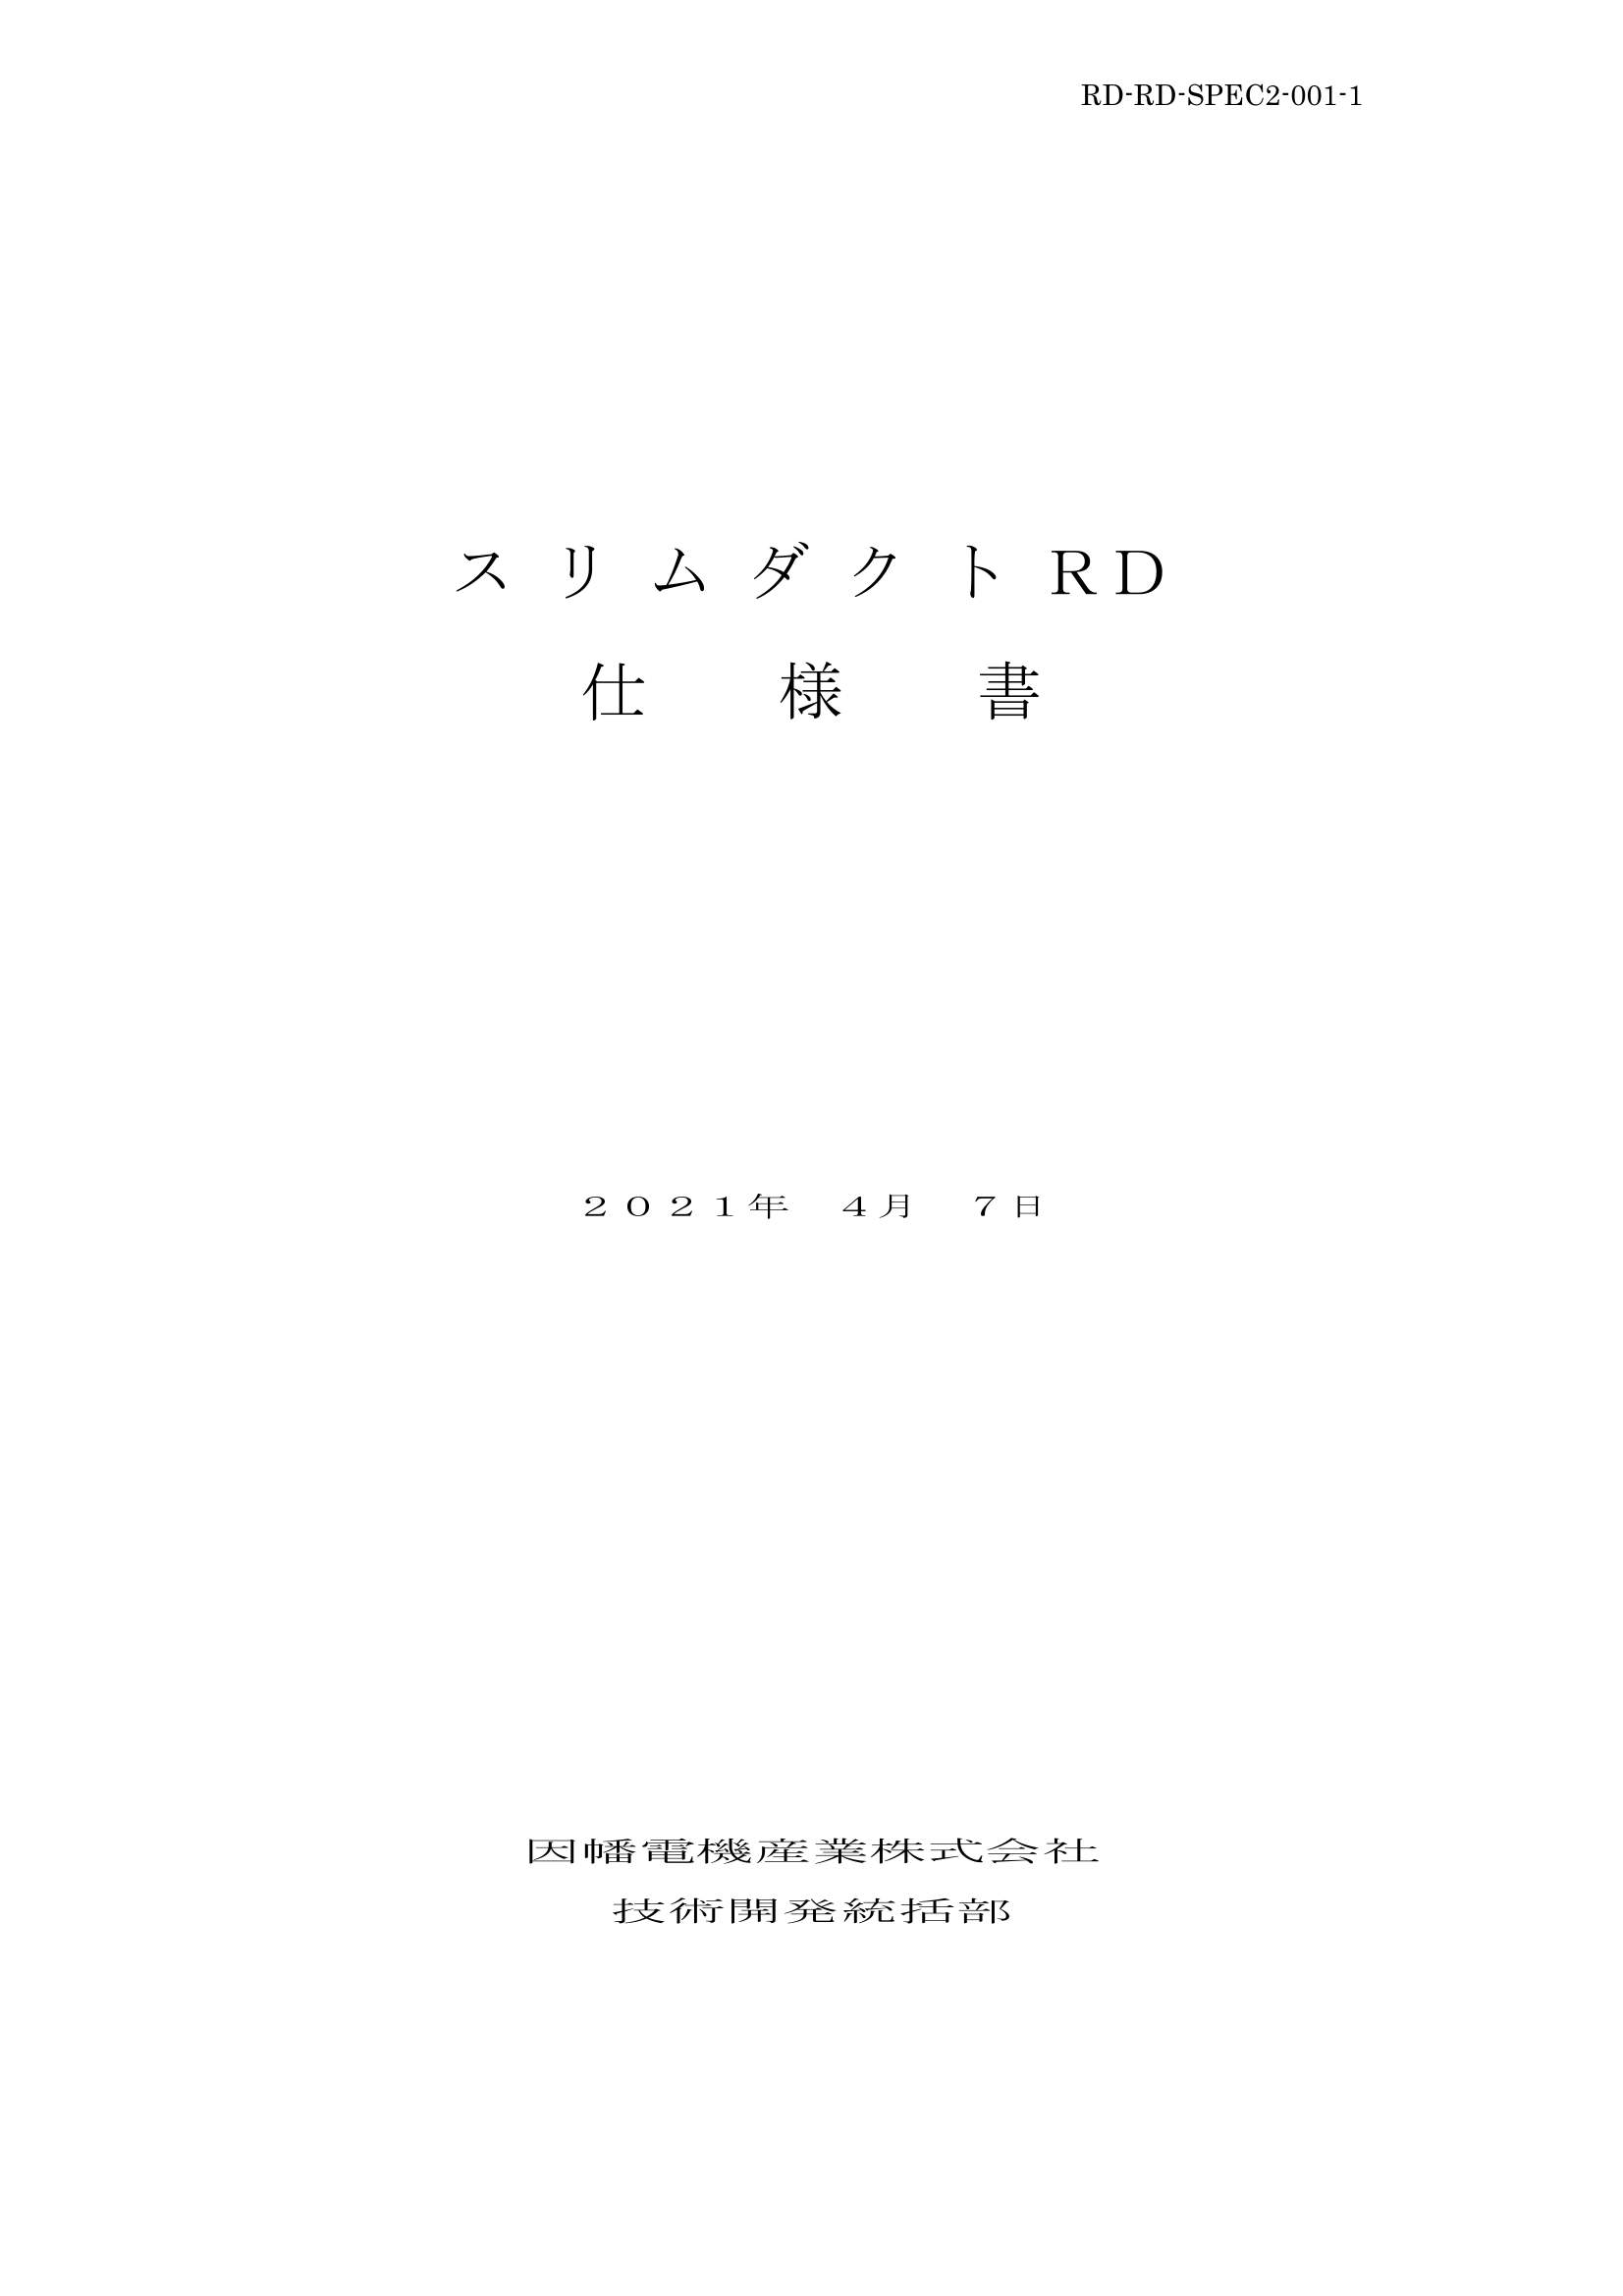 RD_仕様書_20210407.pdf